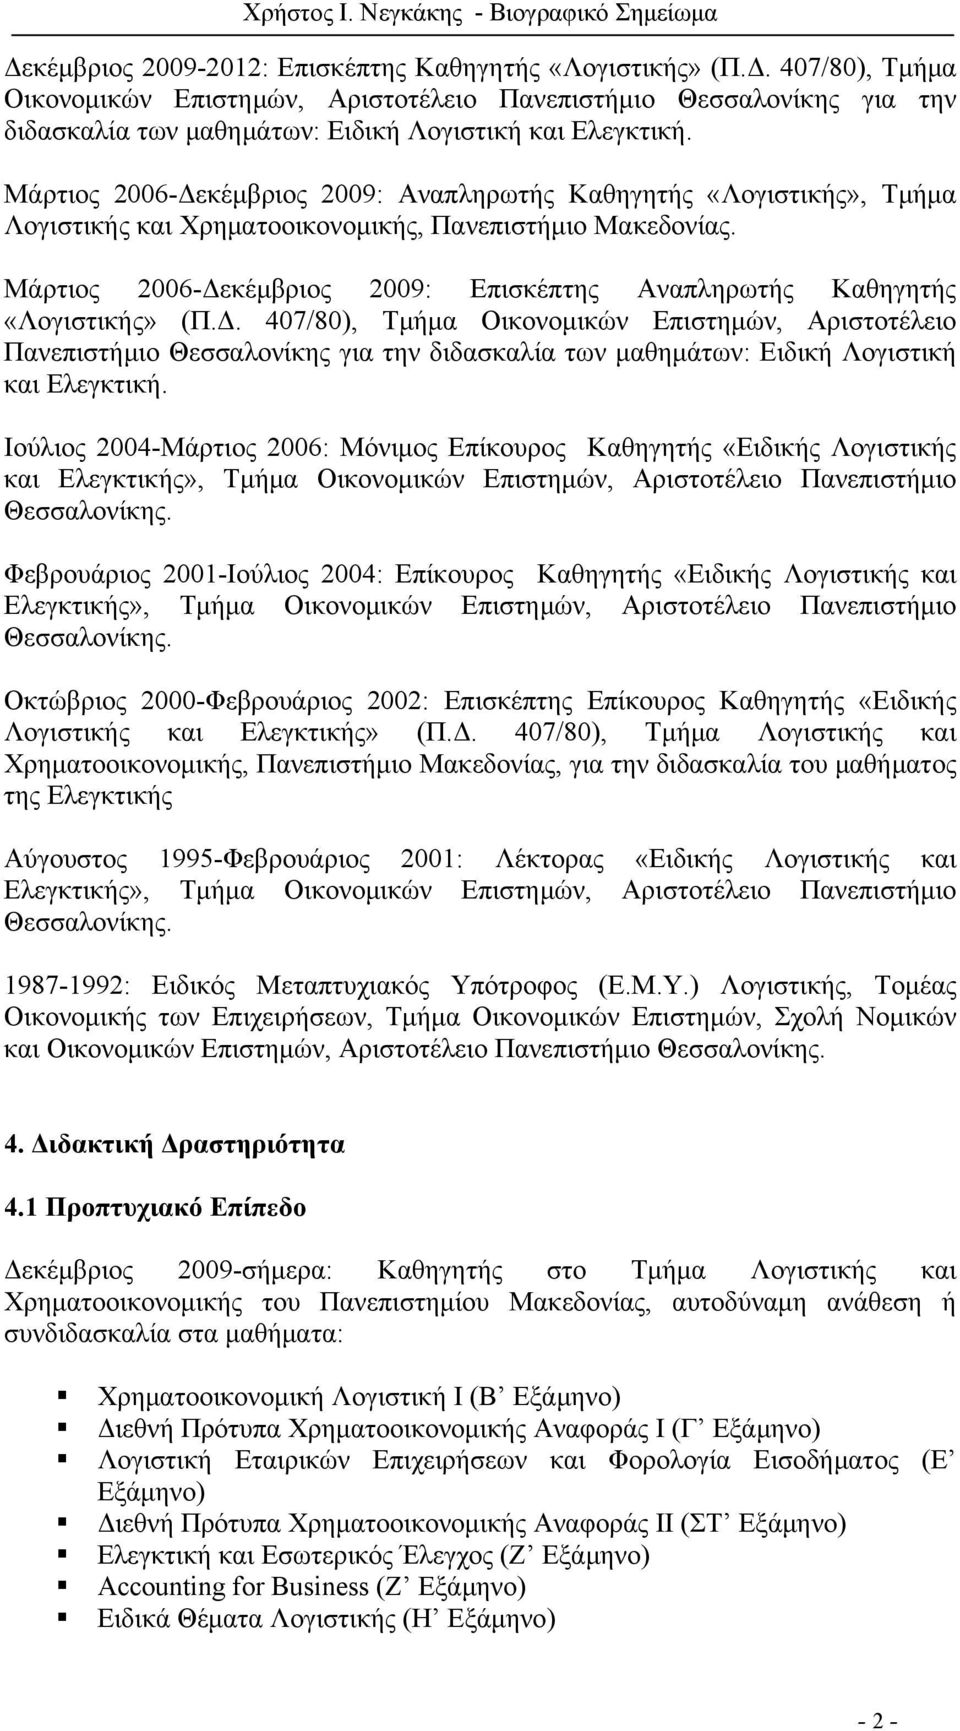 Μάρτιος 2006-Δεκέμβριος 2009: Επισκέπτης Αναπληρωτής Καθηγητής «Λογιστικής» (Π.Δ. 407/80), Τμήμα Οικονομικών Επιστημών, Αριστοτέλειο Πανεπιστήμιο Θεσσαλονίκης για την διδασκαλία των μαθημάτων: Ειδική Λογιστική και Ελεγκτική.